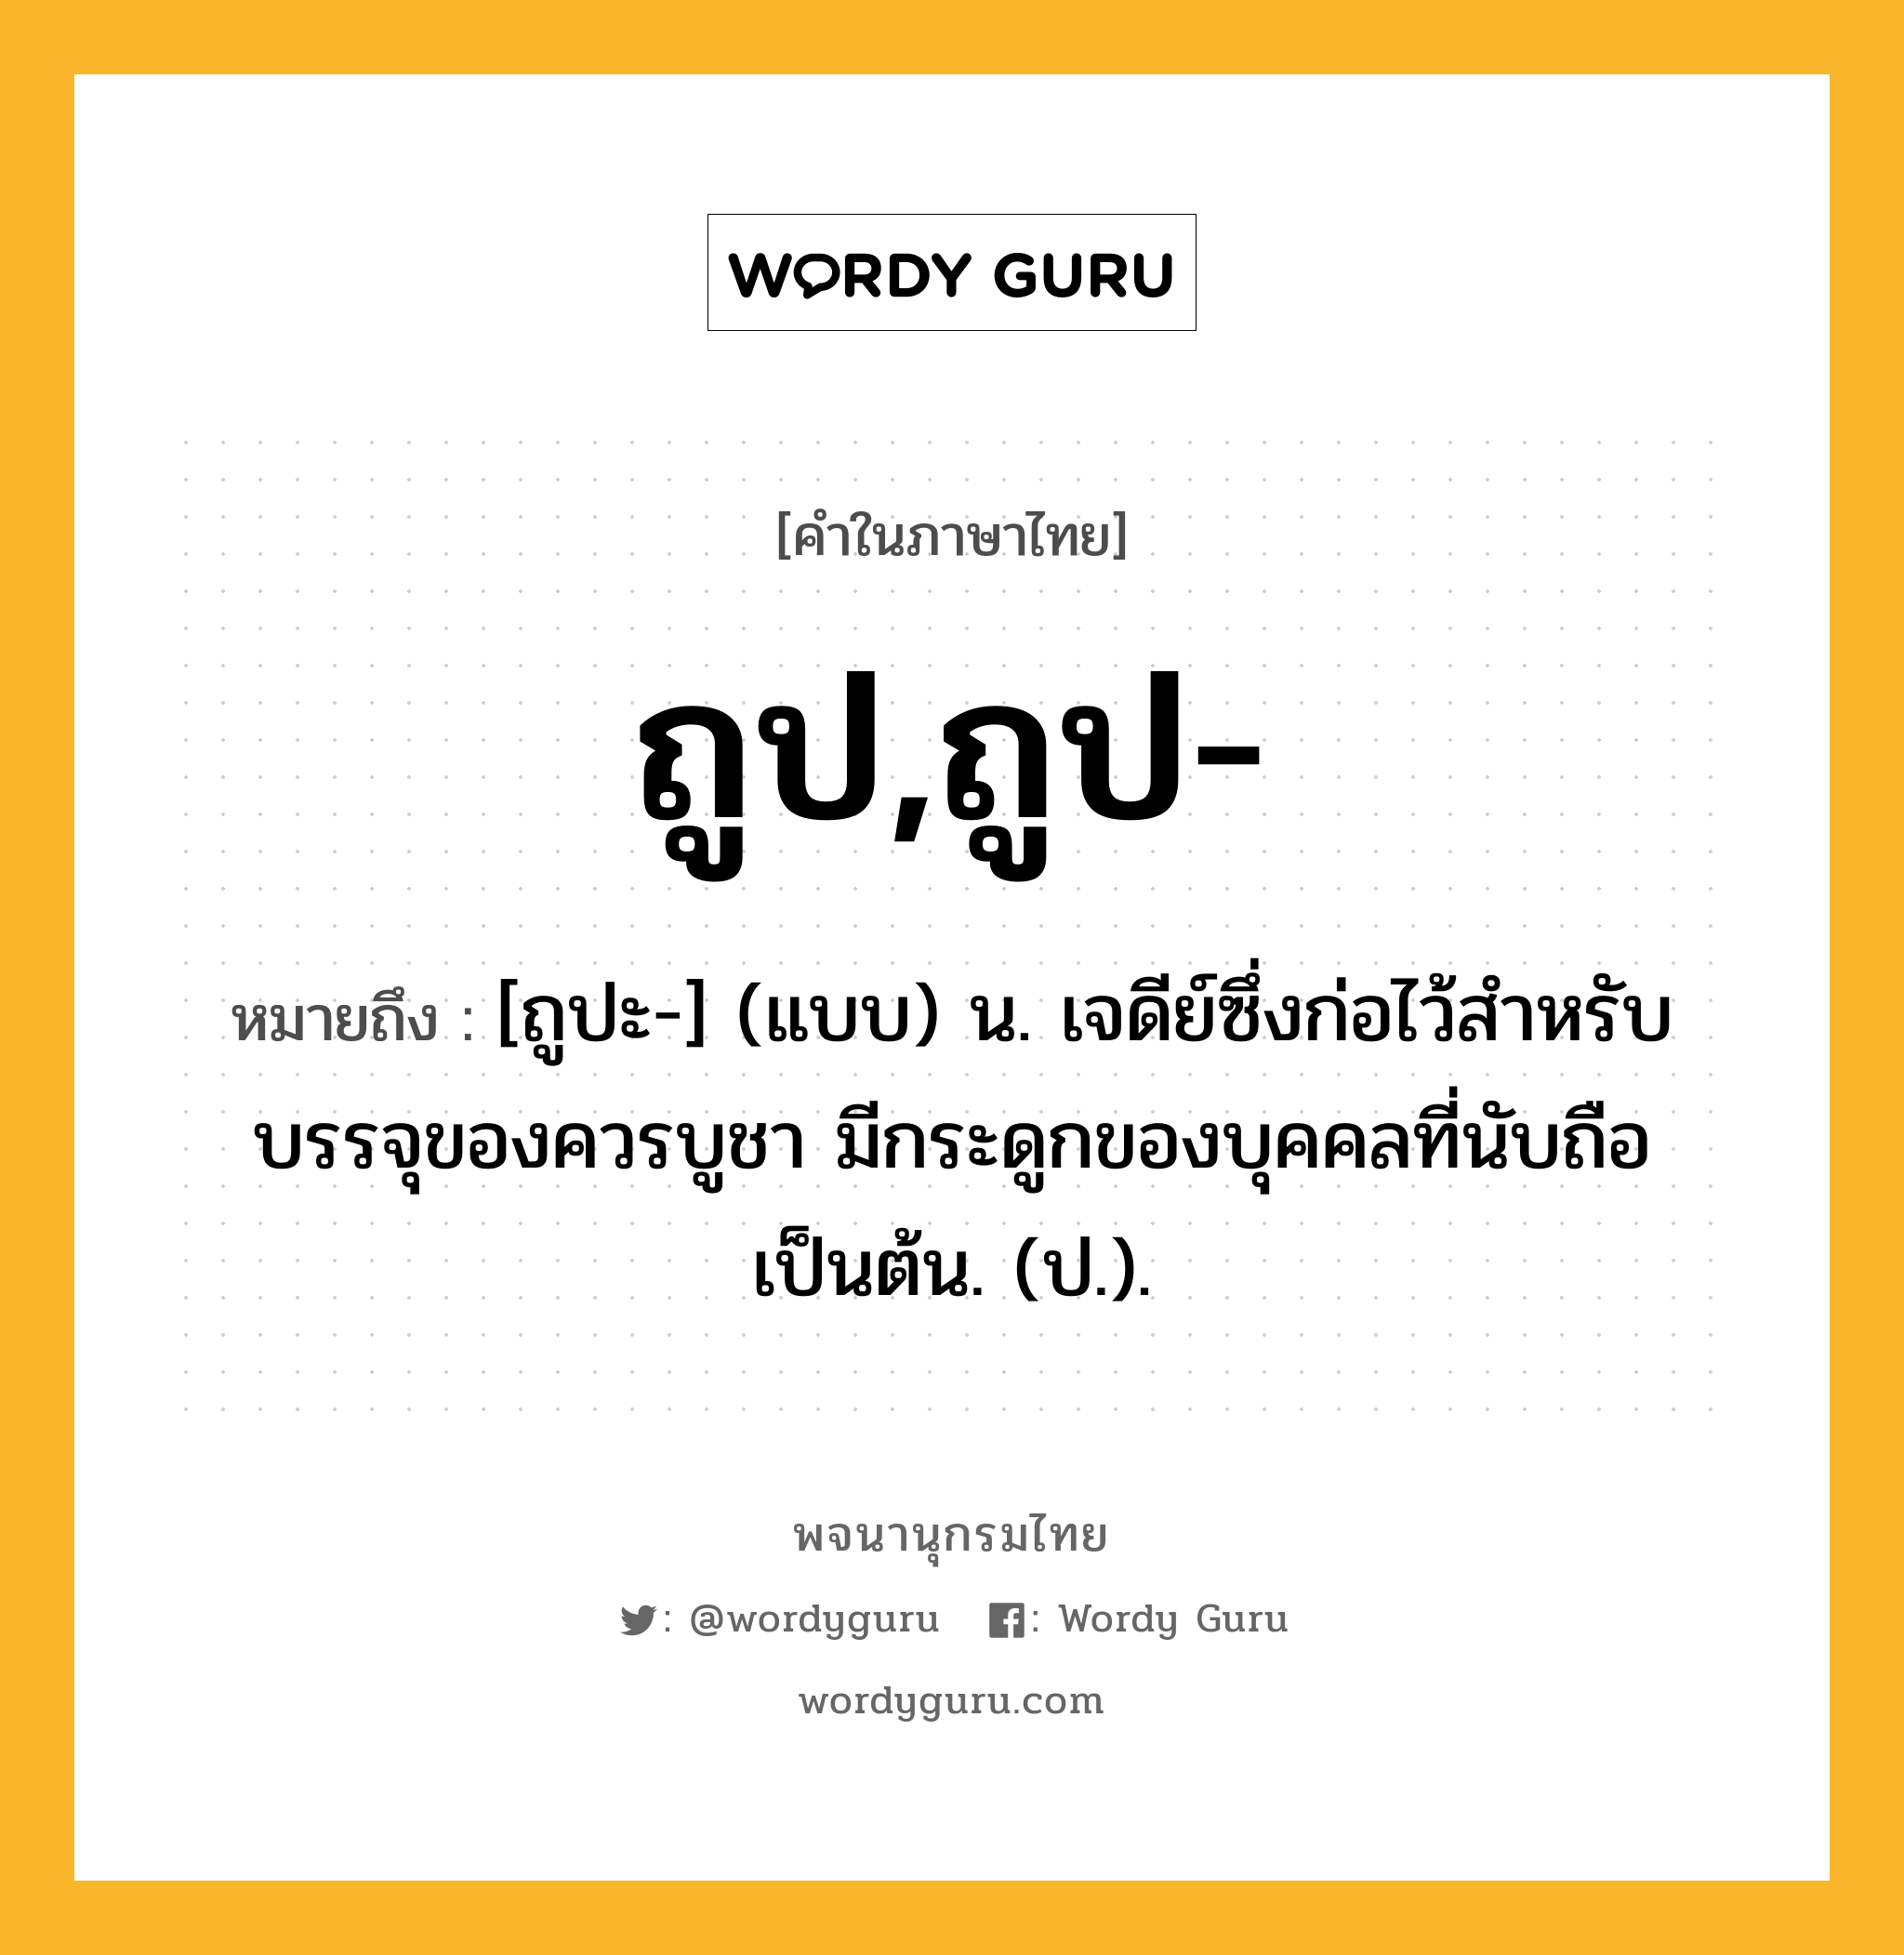 ถูป,ถูป- ความหมาย หมายถึงอะไร?, คำในภาษาไทย ถูป,ถูป- หมายถึง [ถูปะ-] (แบบ) น. เจดีย์ซึ่งก่อไว้สําหรับบรรจุของควรบูชา มีกระดูกของบุคคลที่นับถือเป็นต้น. (ป.).